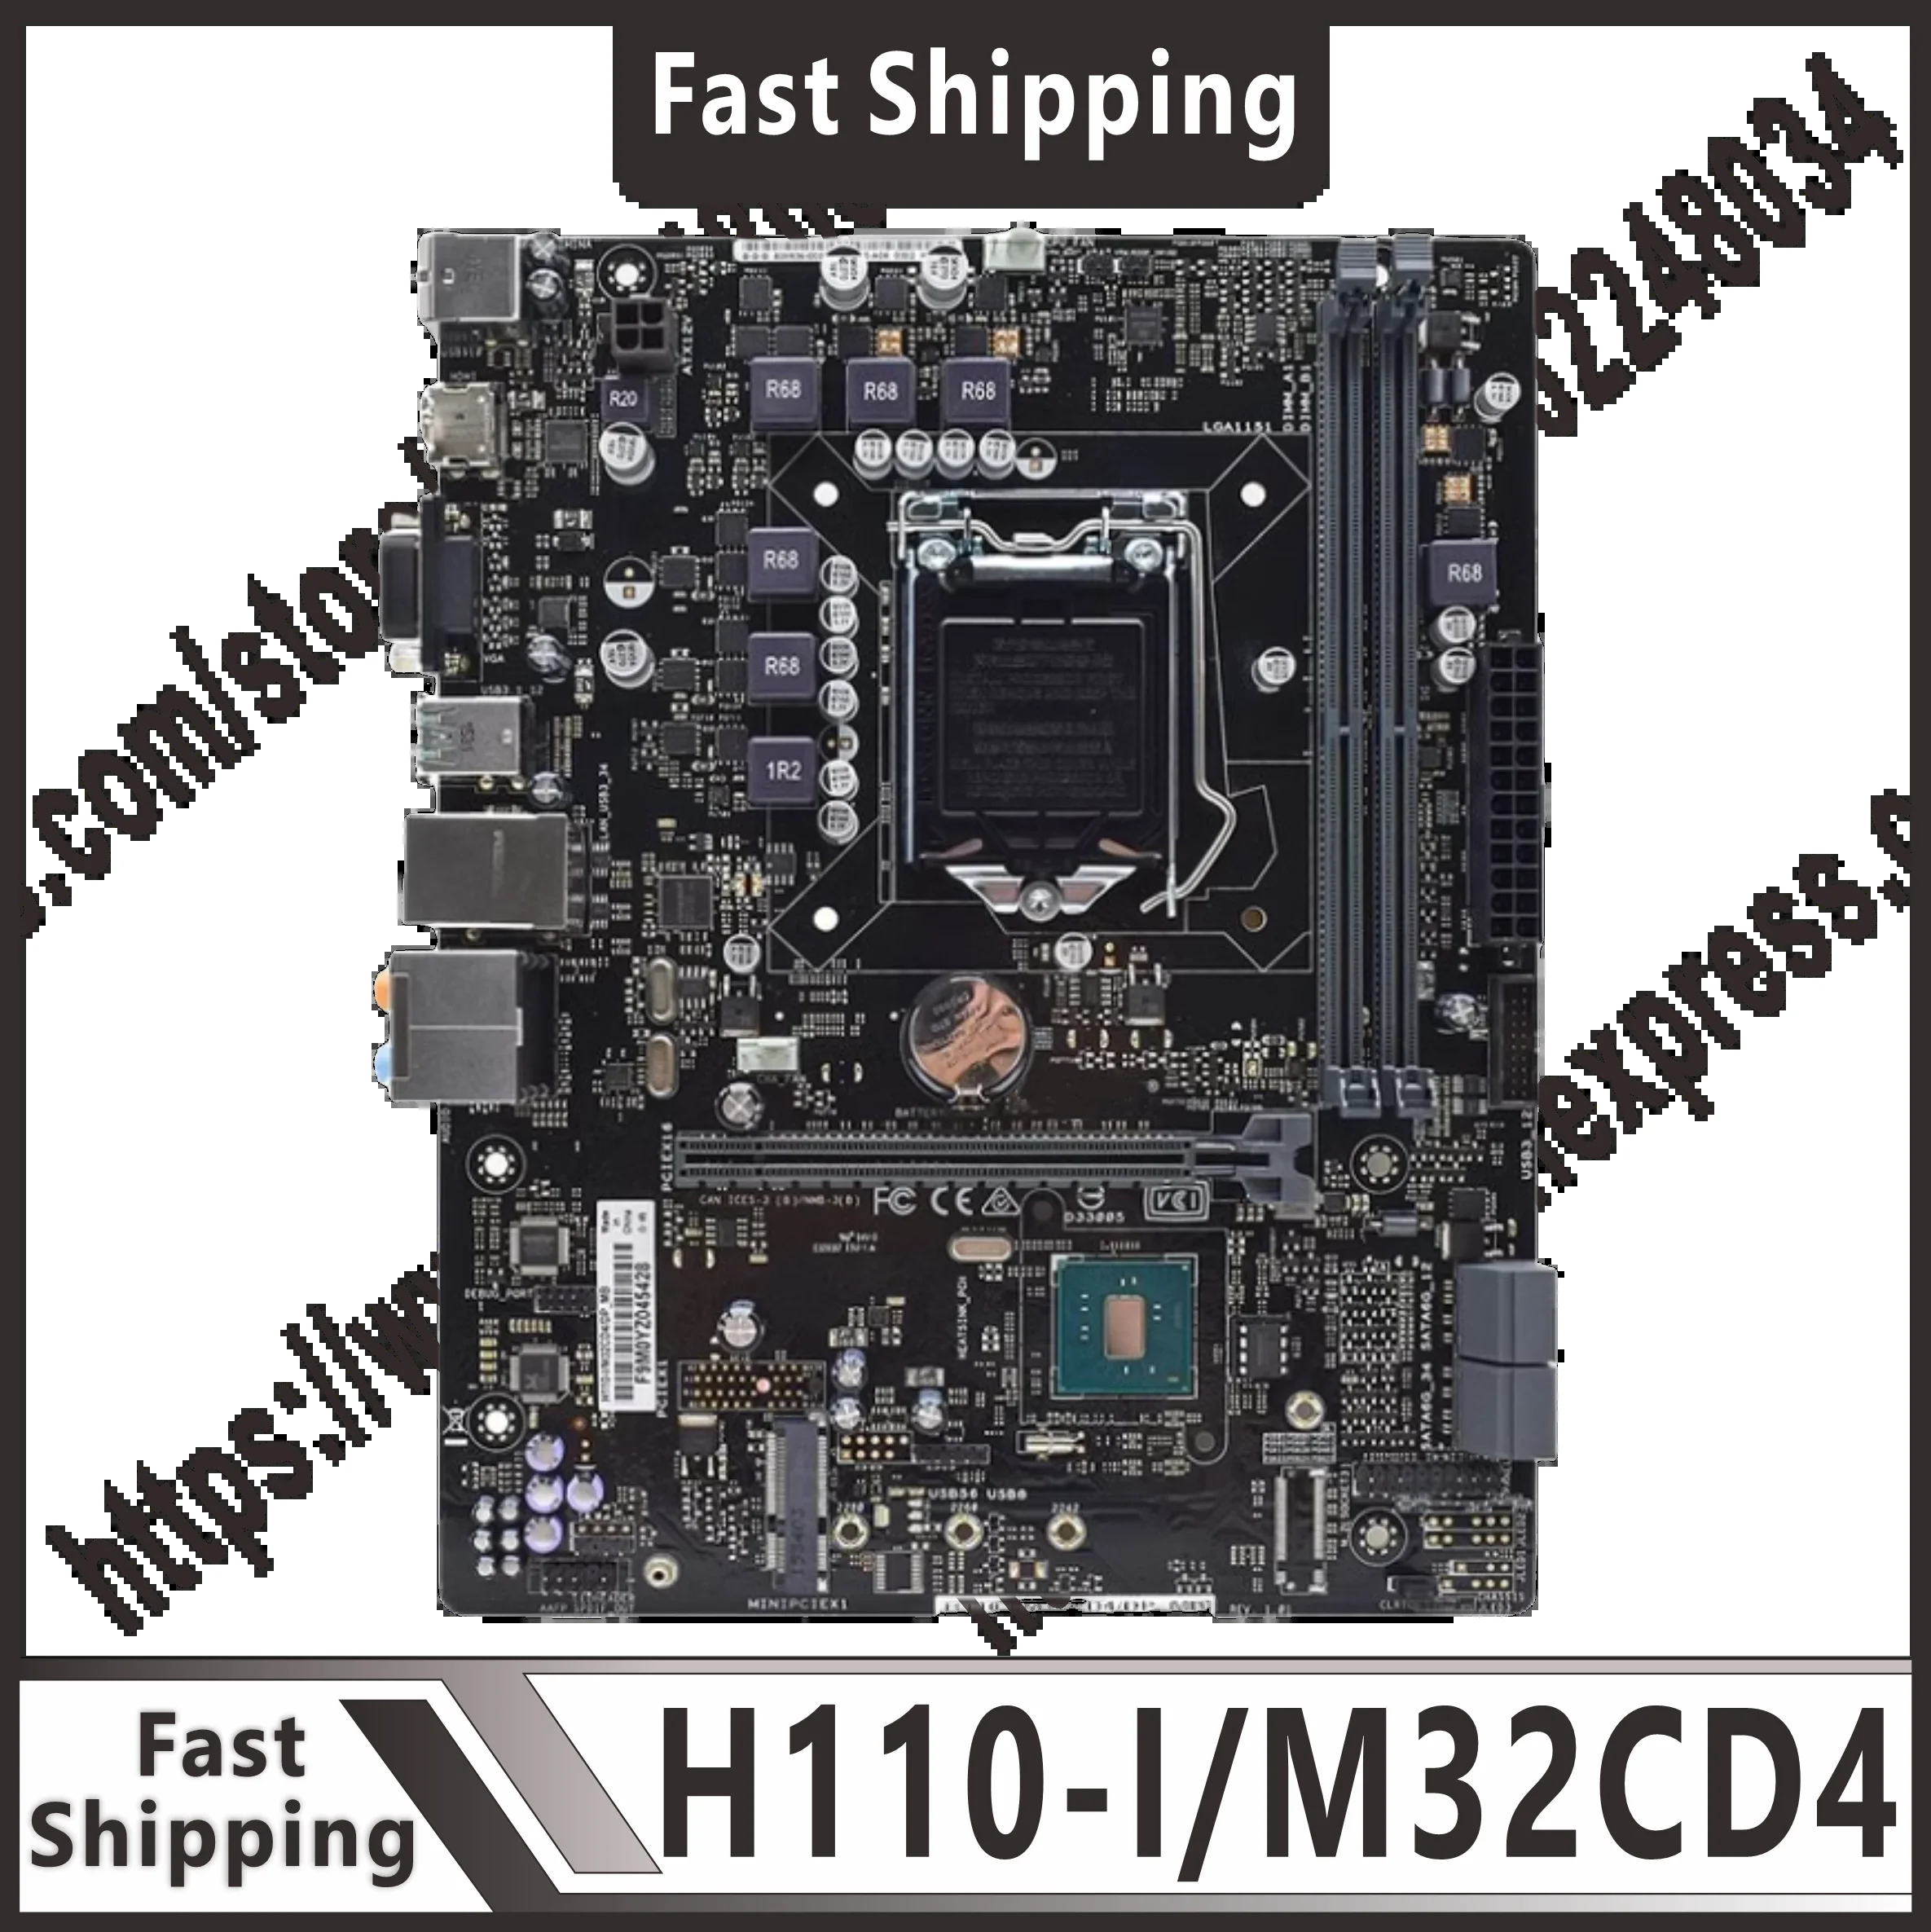 H110  ŰƮ, H110-I, M32CD4, i5 6500 + DDR4 8G * 2 1151  ŰƮ, HDMI, USB3.0, MicroATX